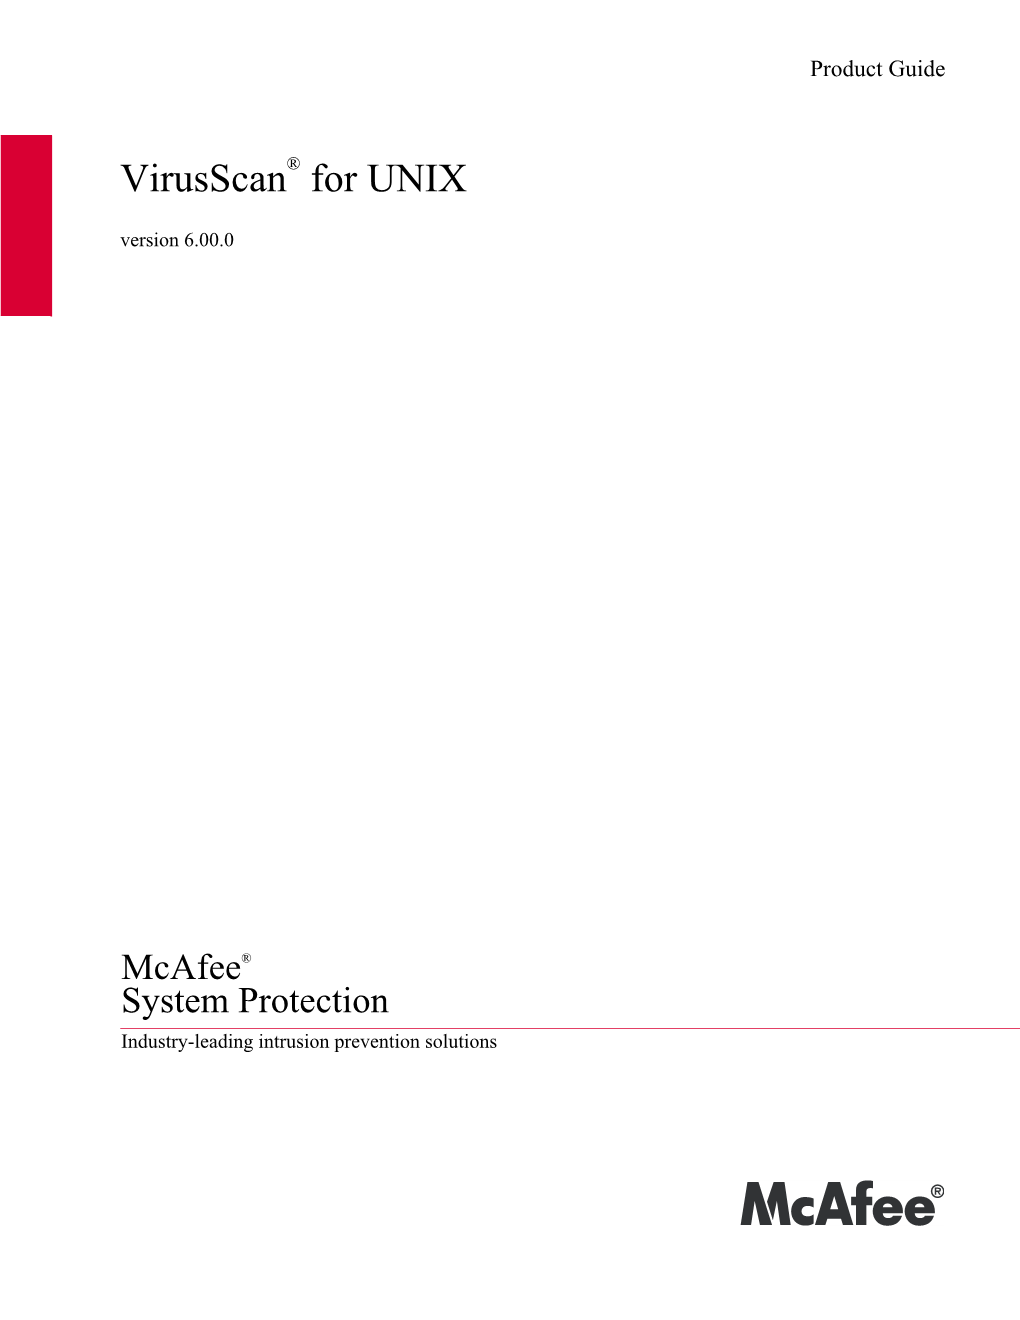 Virusscan® for UNIX Version 6.00.0